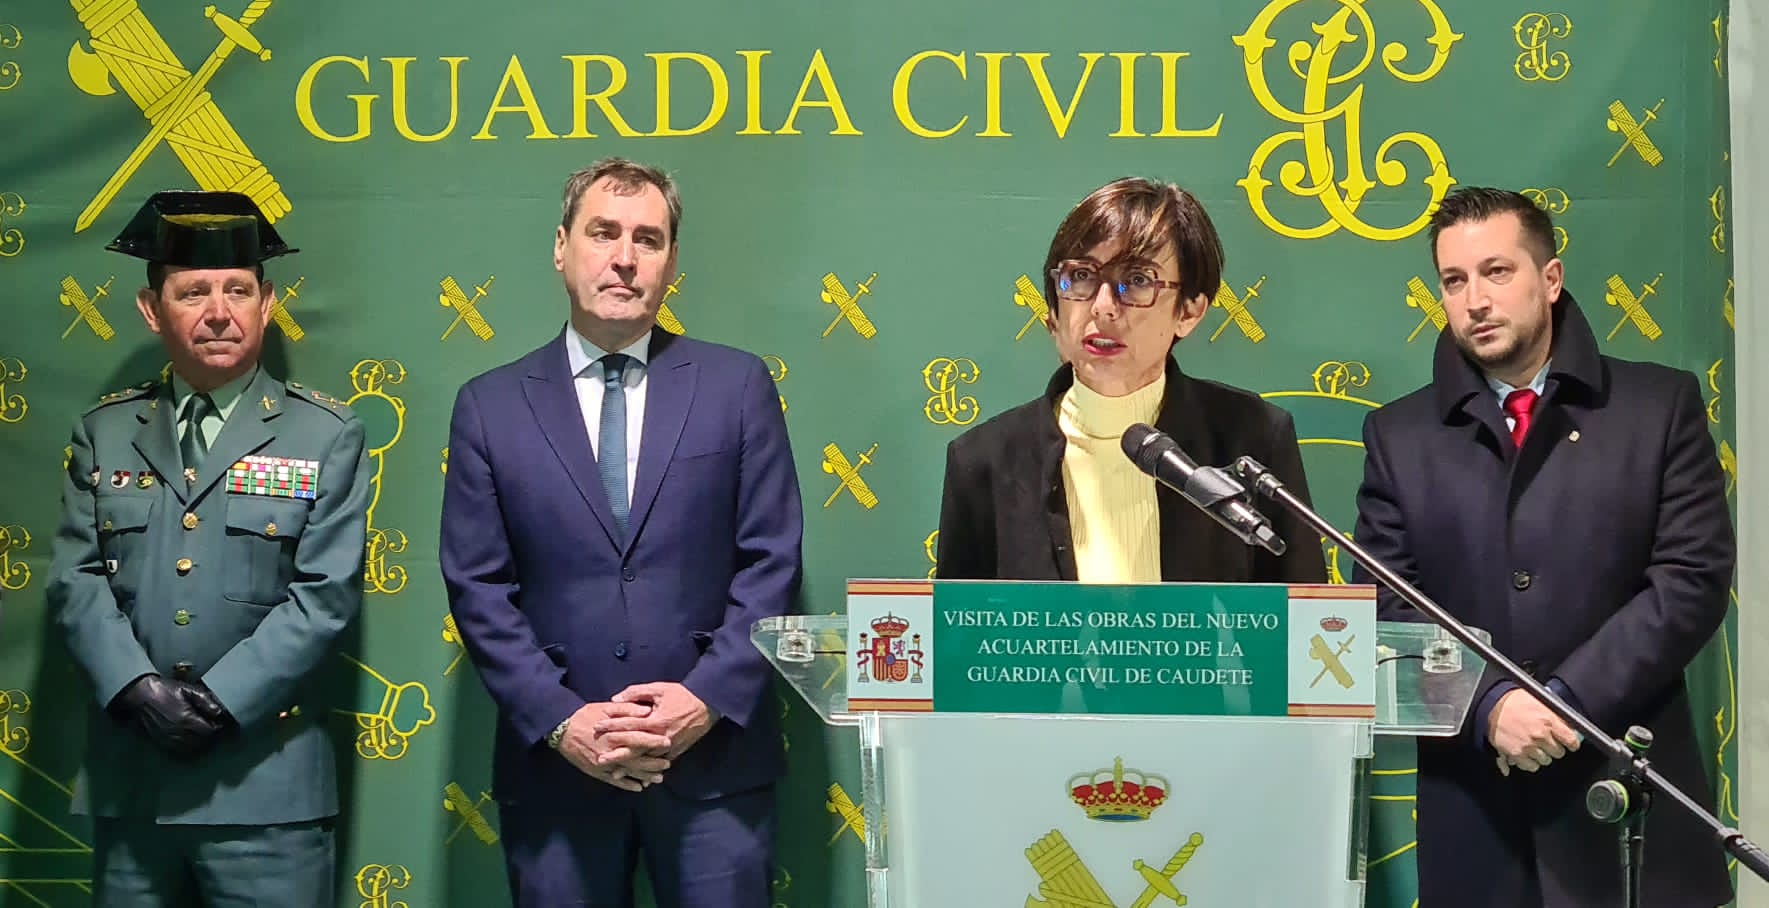 La directora general de la Guardia Civil presenta el proyecto del nuevo cuartel de Caudete (Albacete)